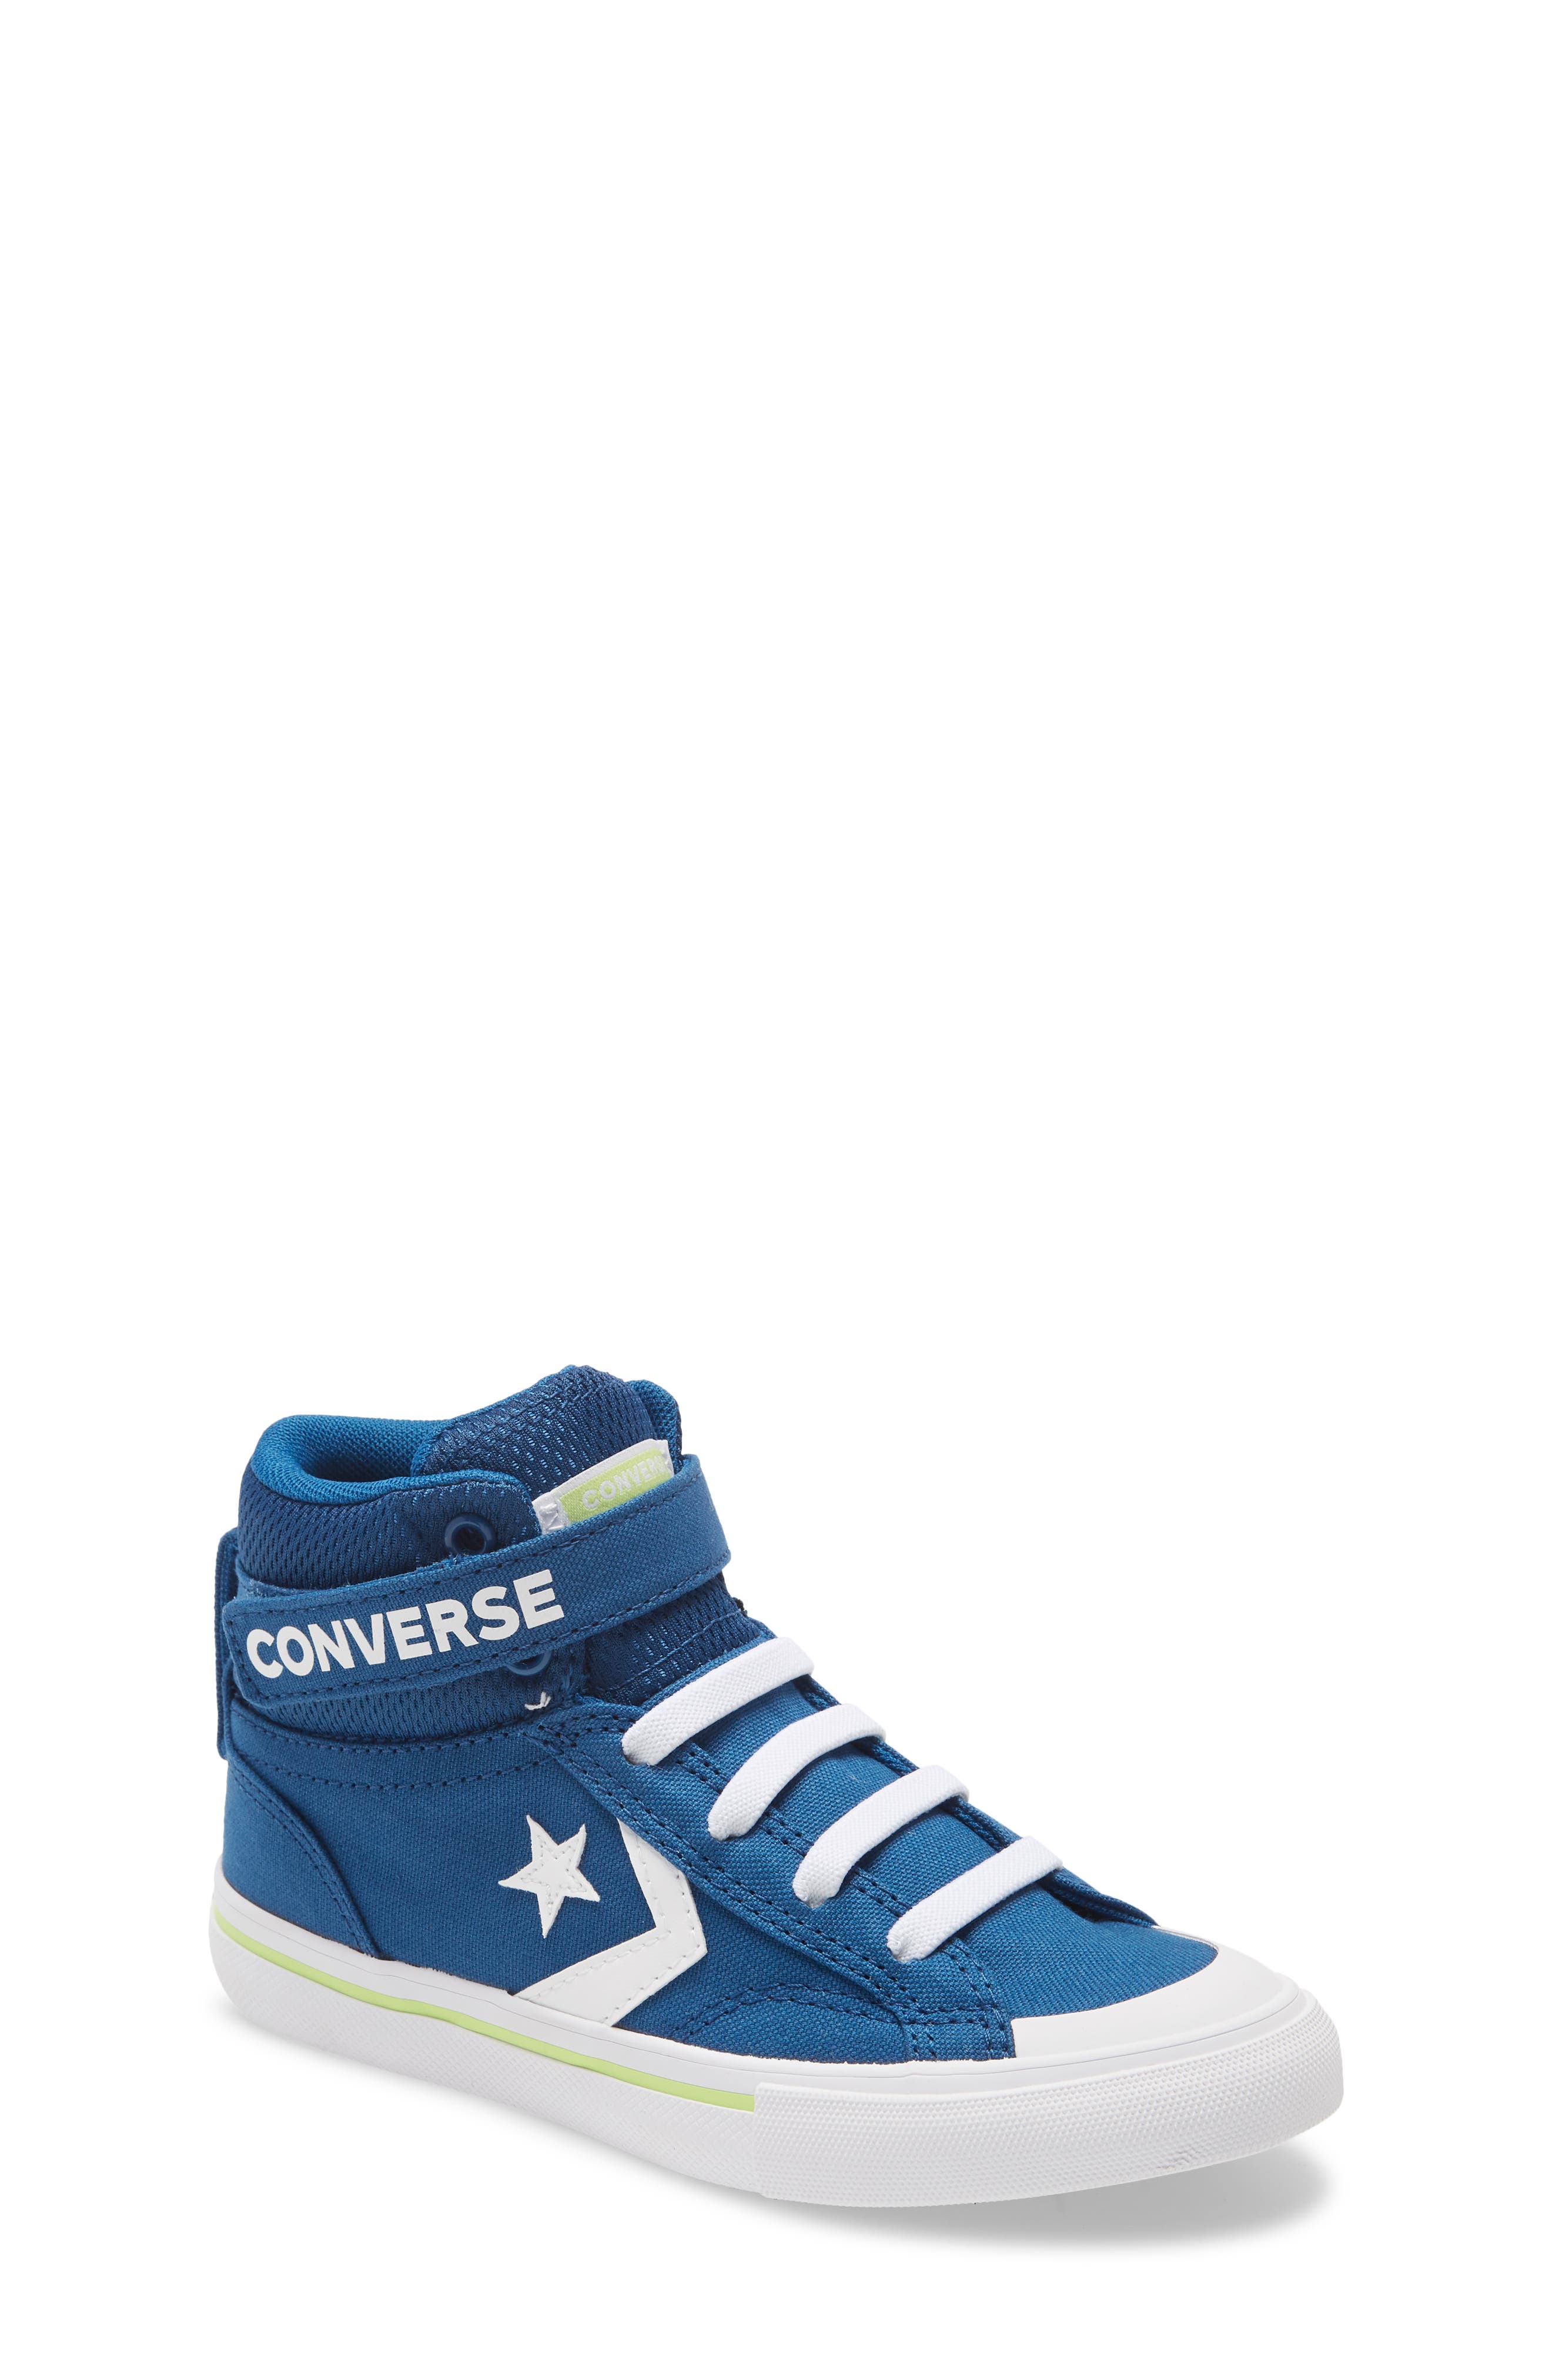 converse all star pro blaze high sneaker